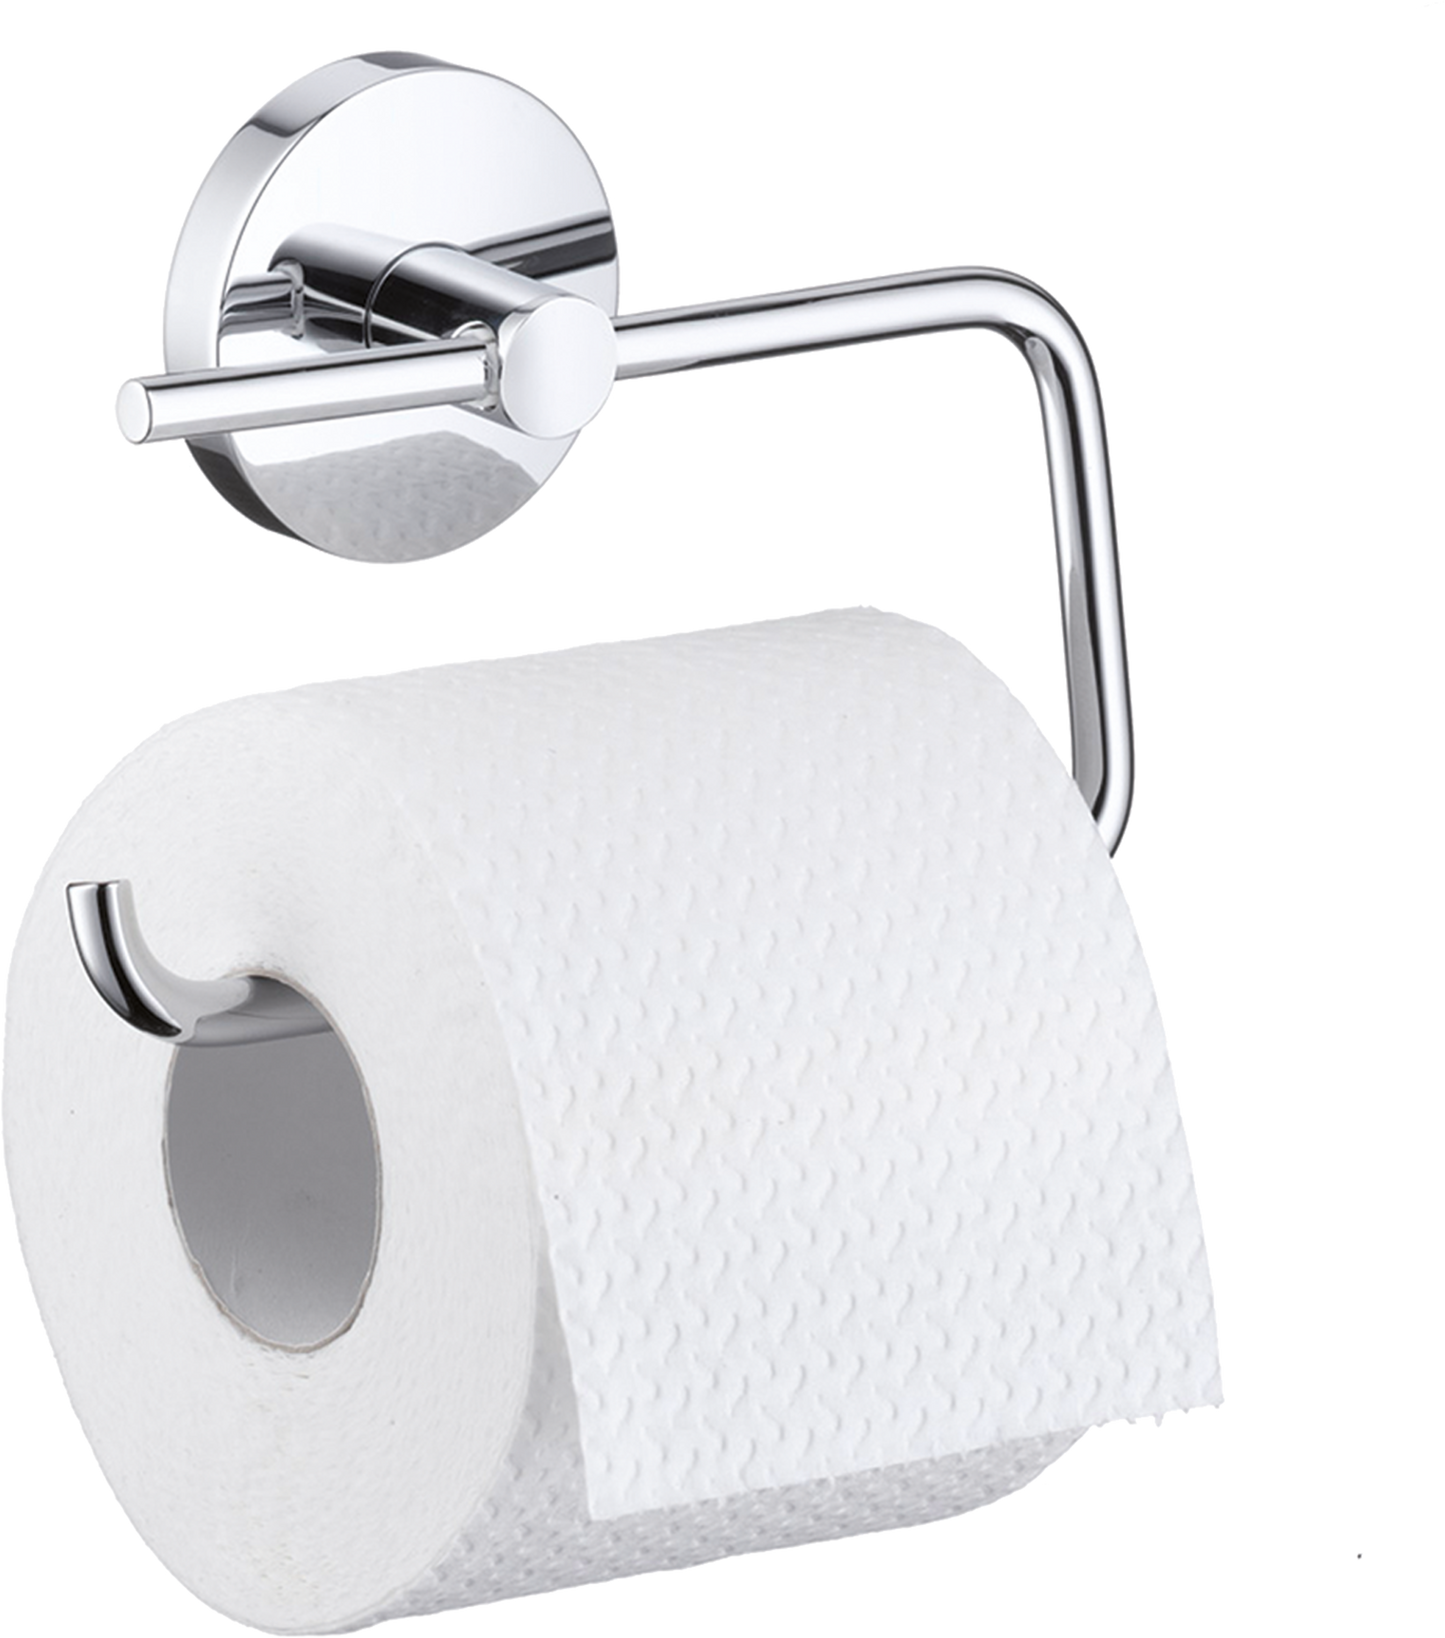 Logis Toilet paper holder